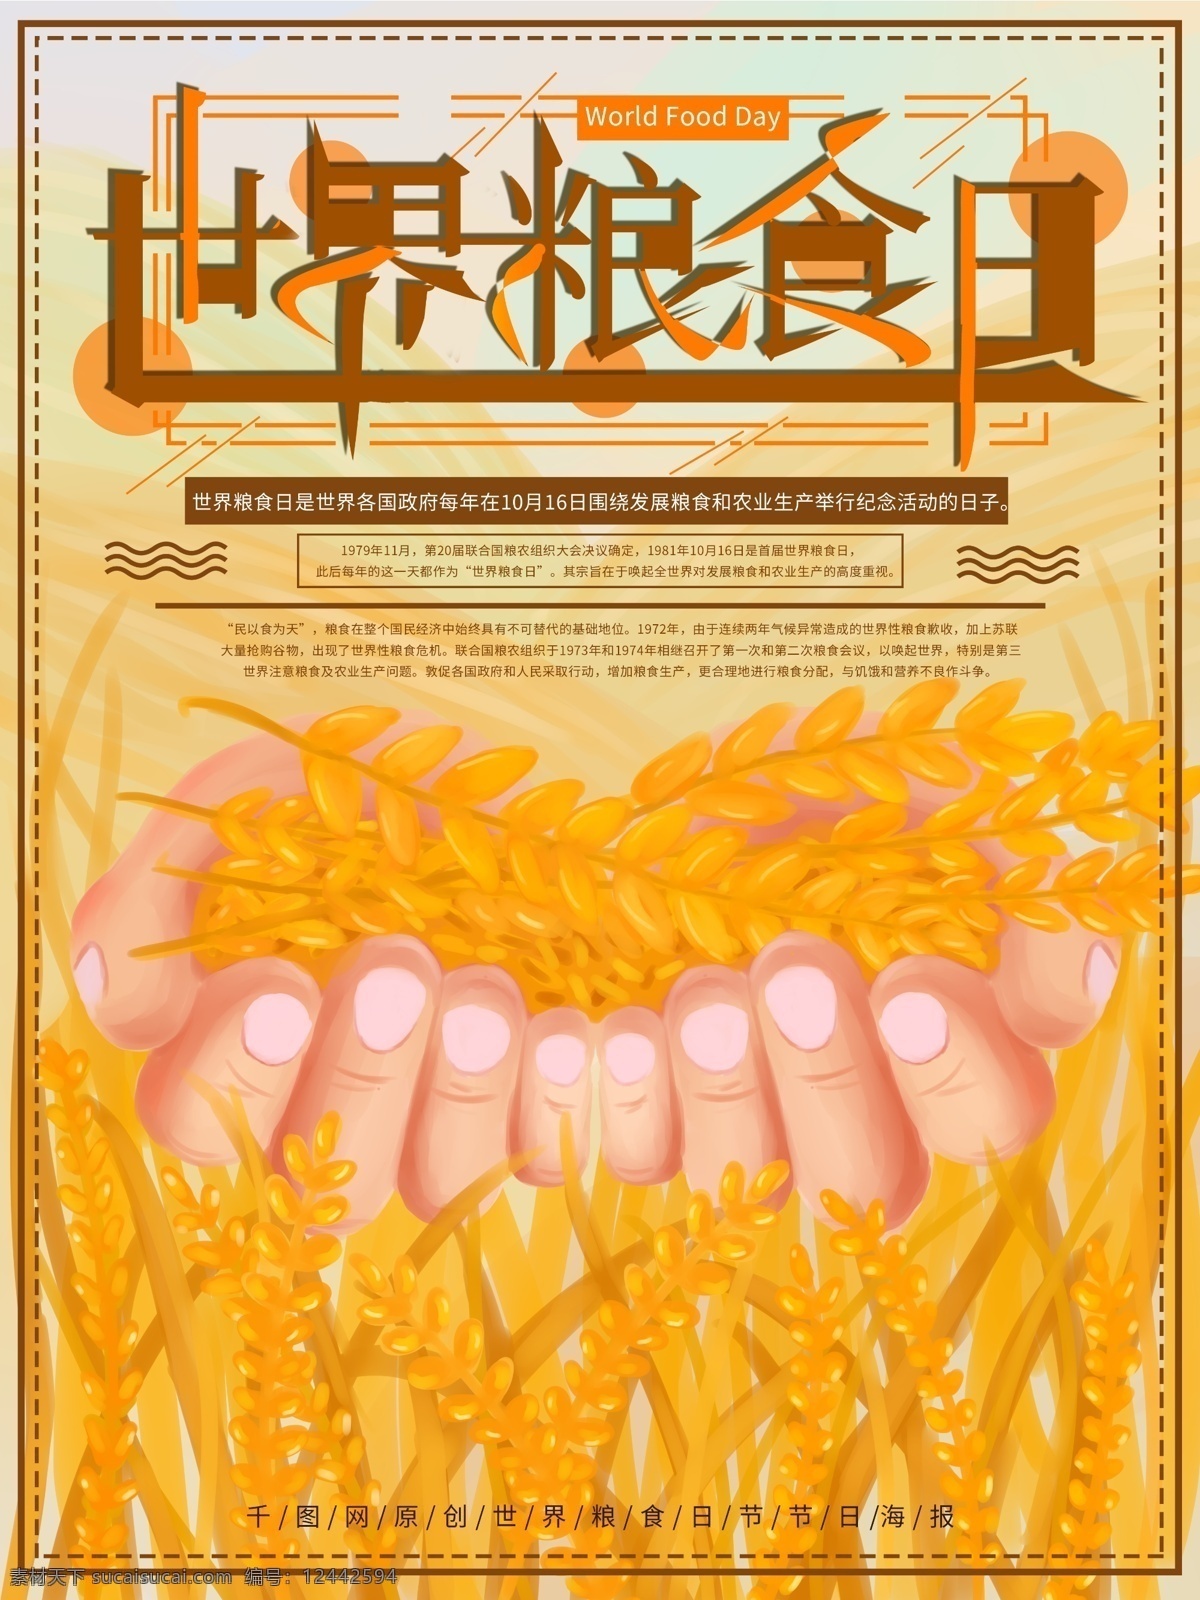 原创 手绘 世界 粮食 日 节日 海报 世界粮食日 稻谷 节日海报